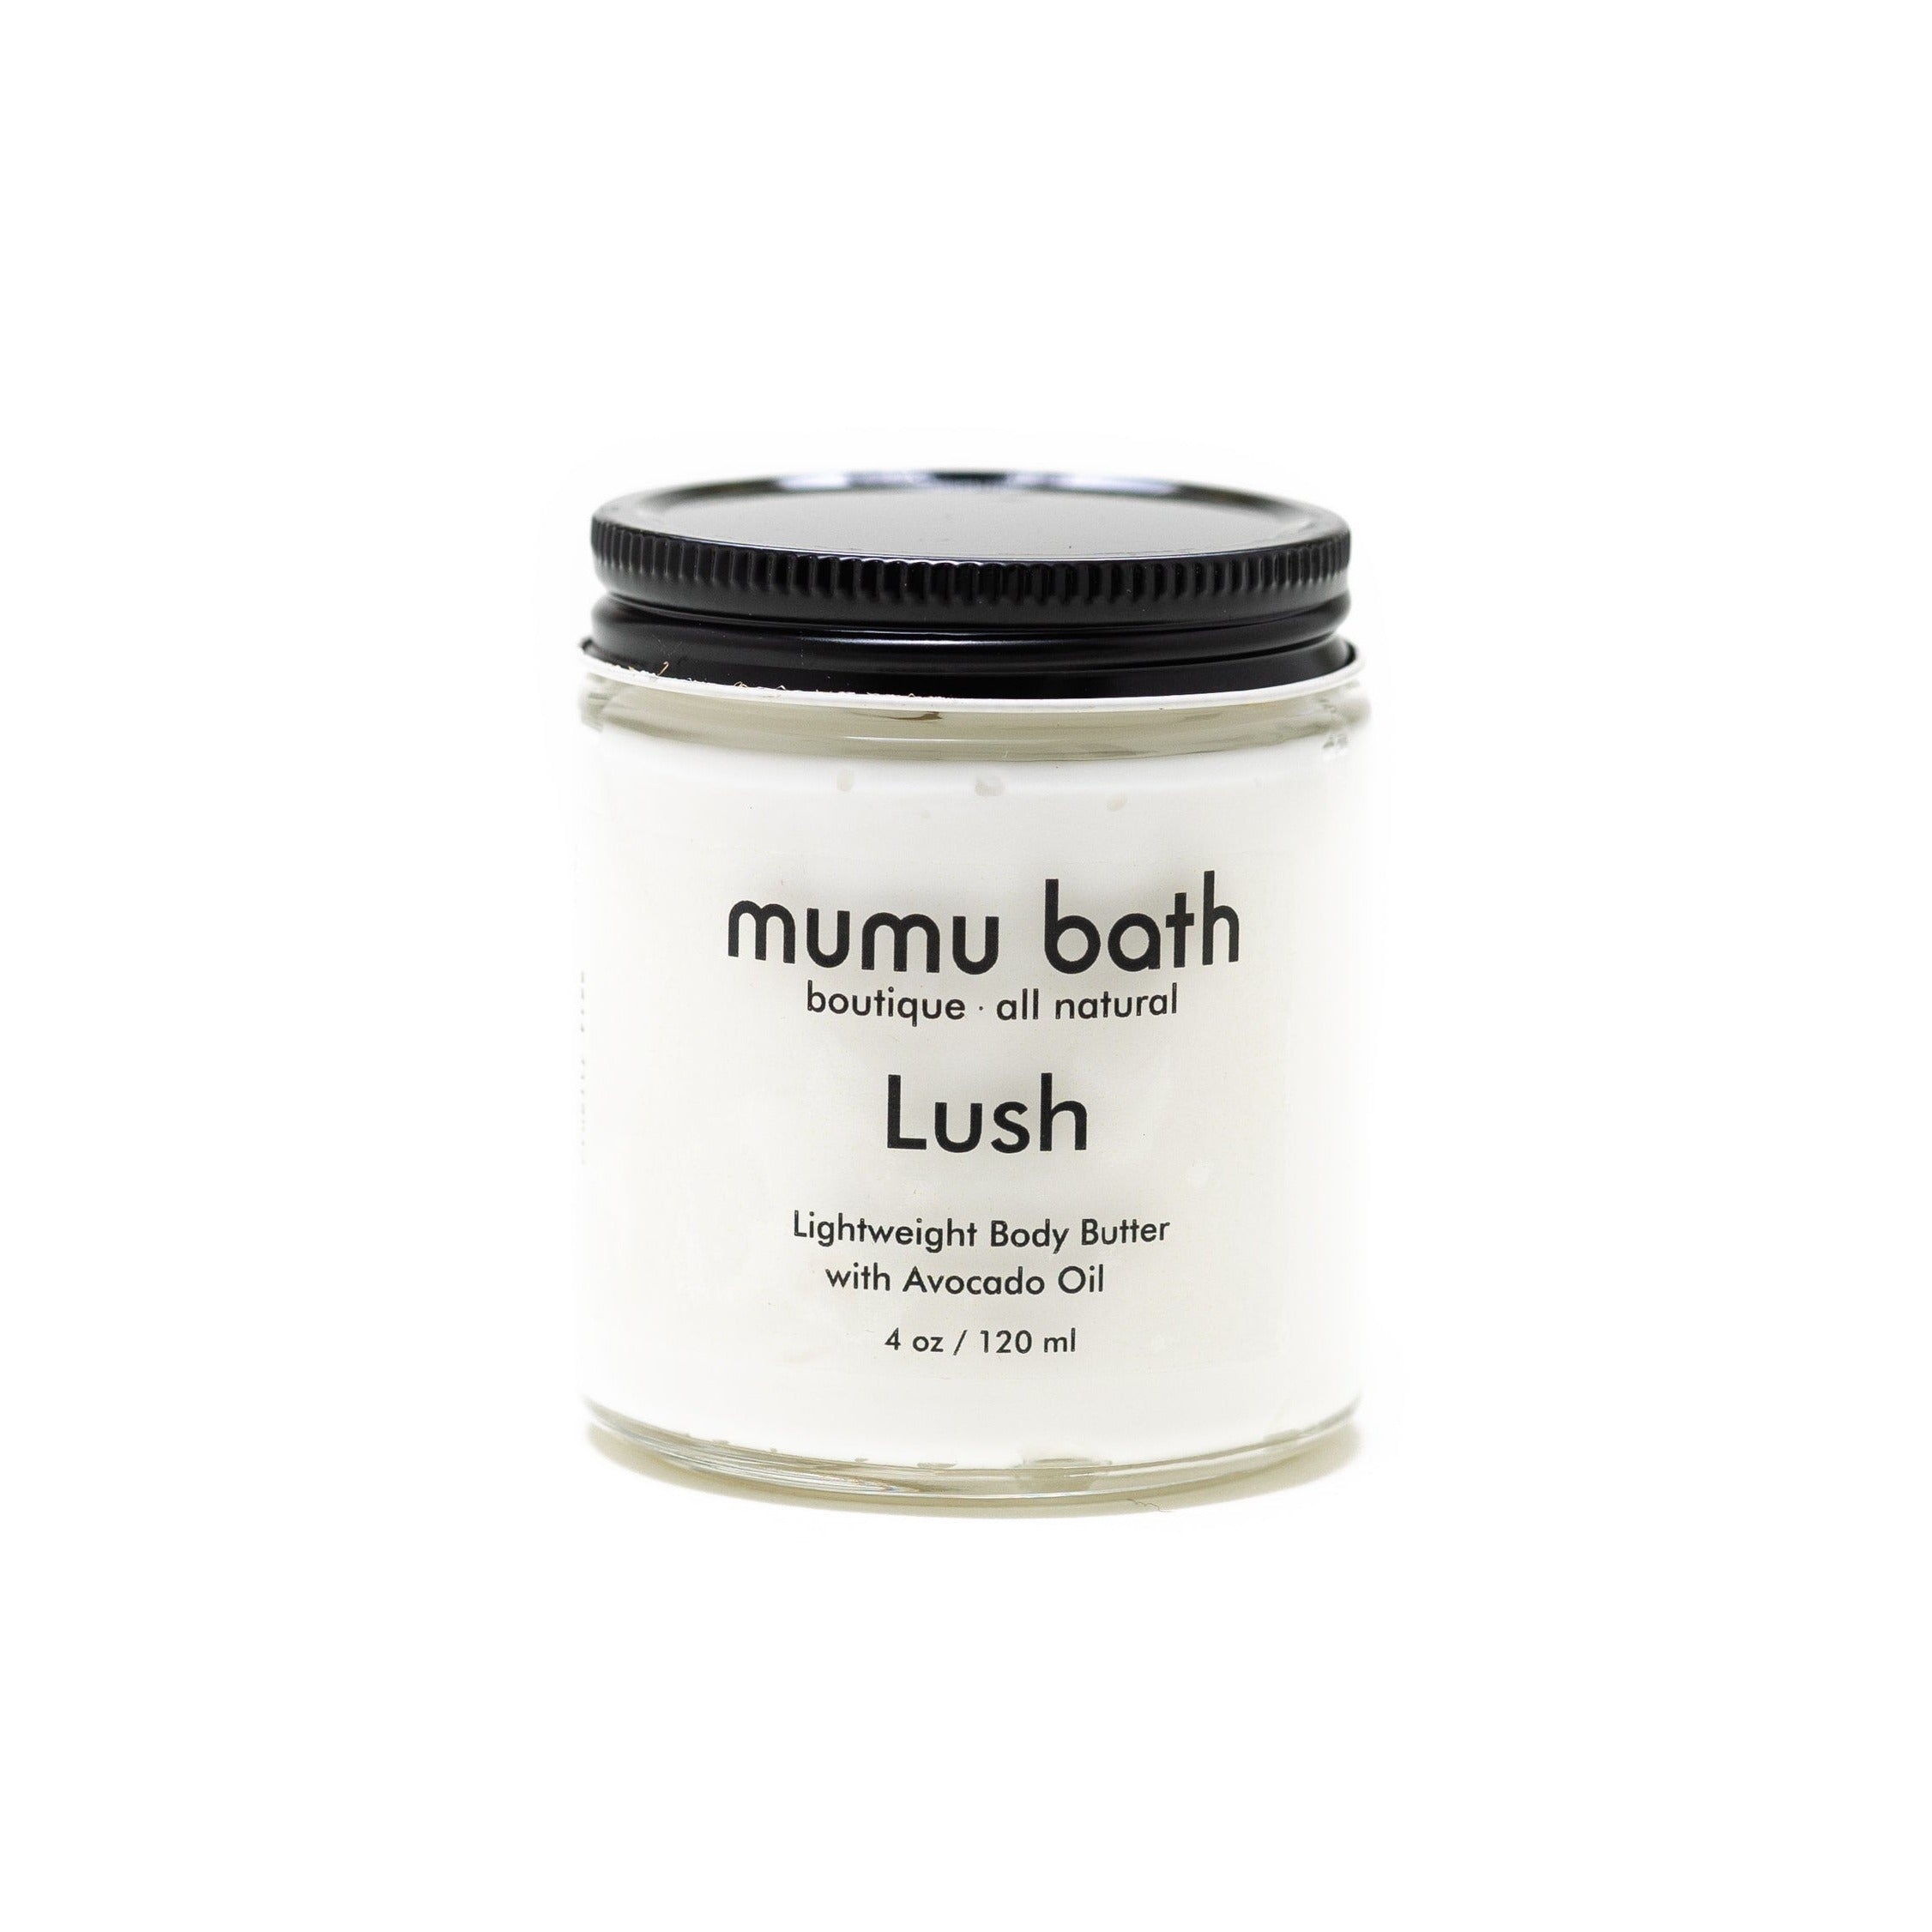 Rose Garden + Lush Lightweight Body Butter Gift Set - Mumu Bath